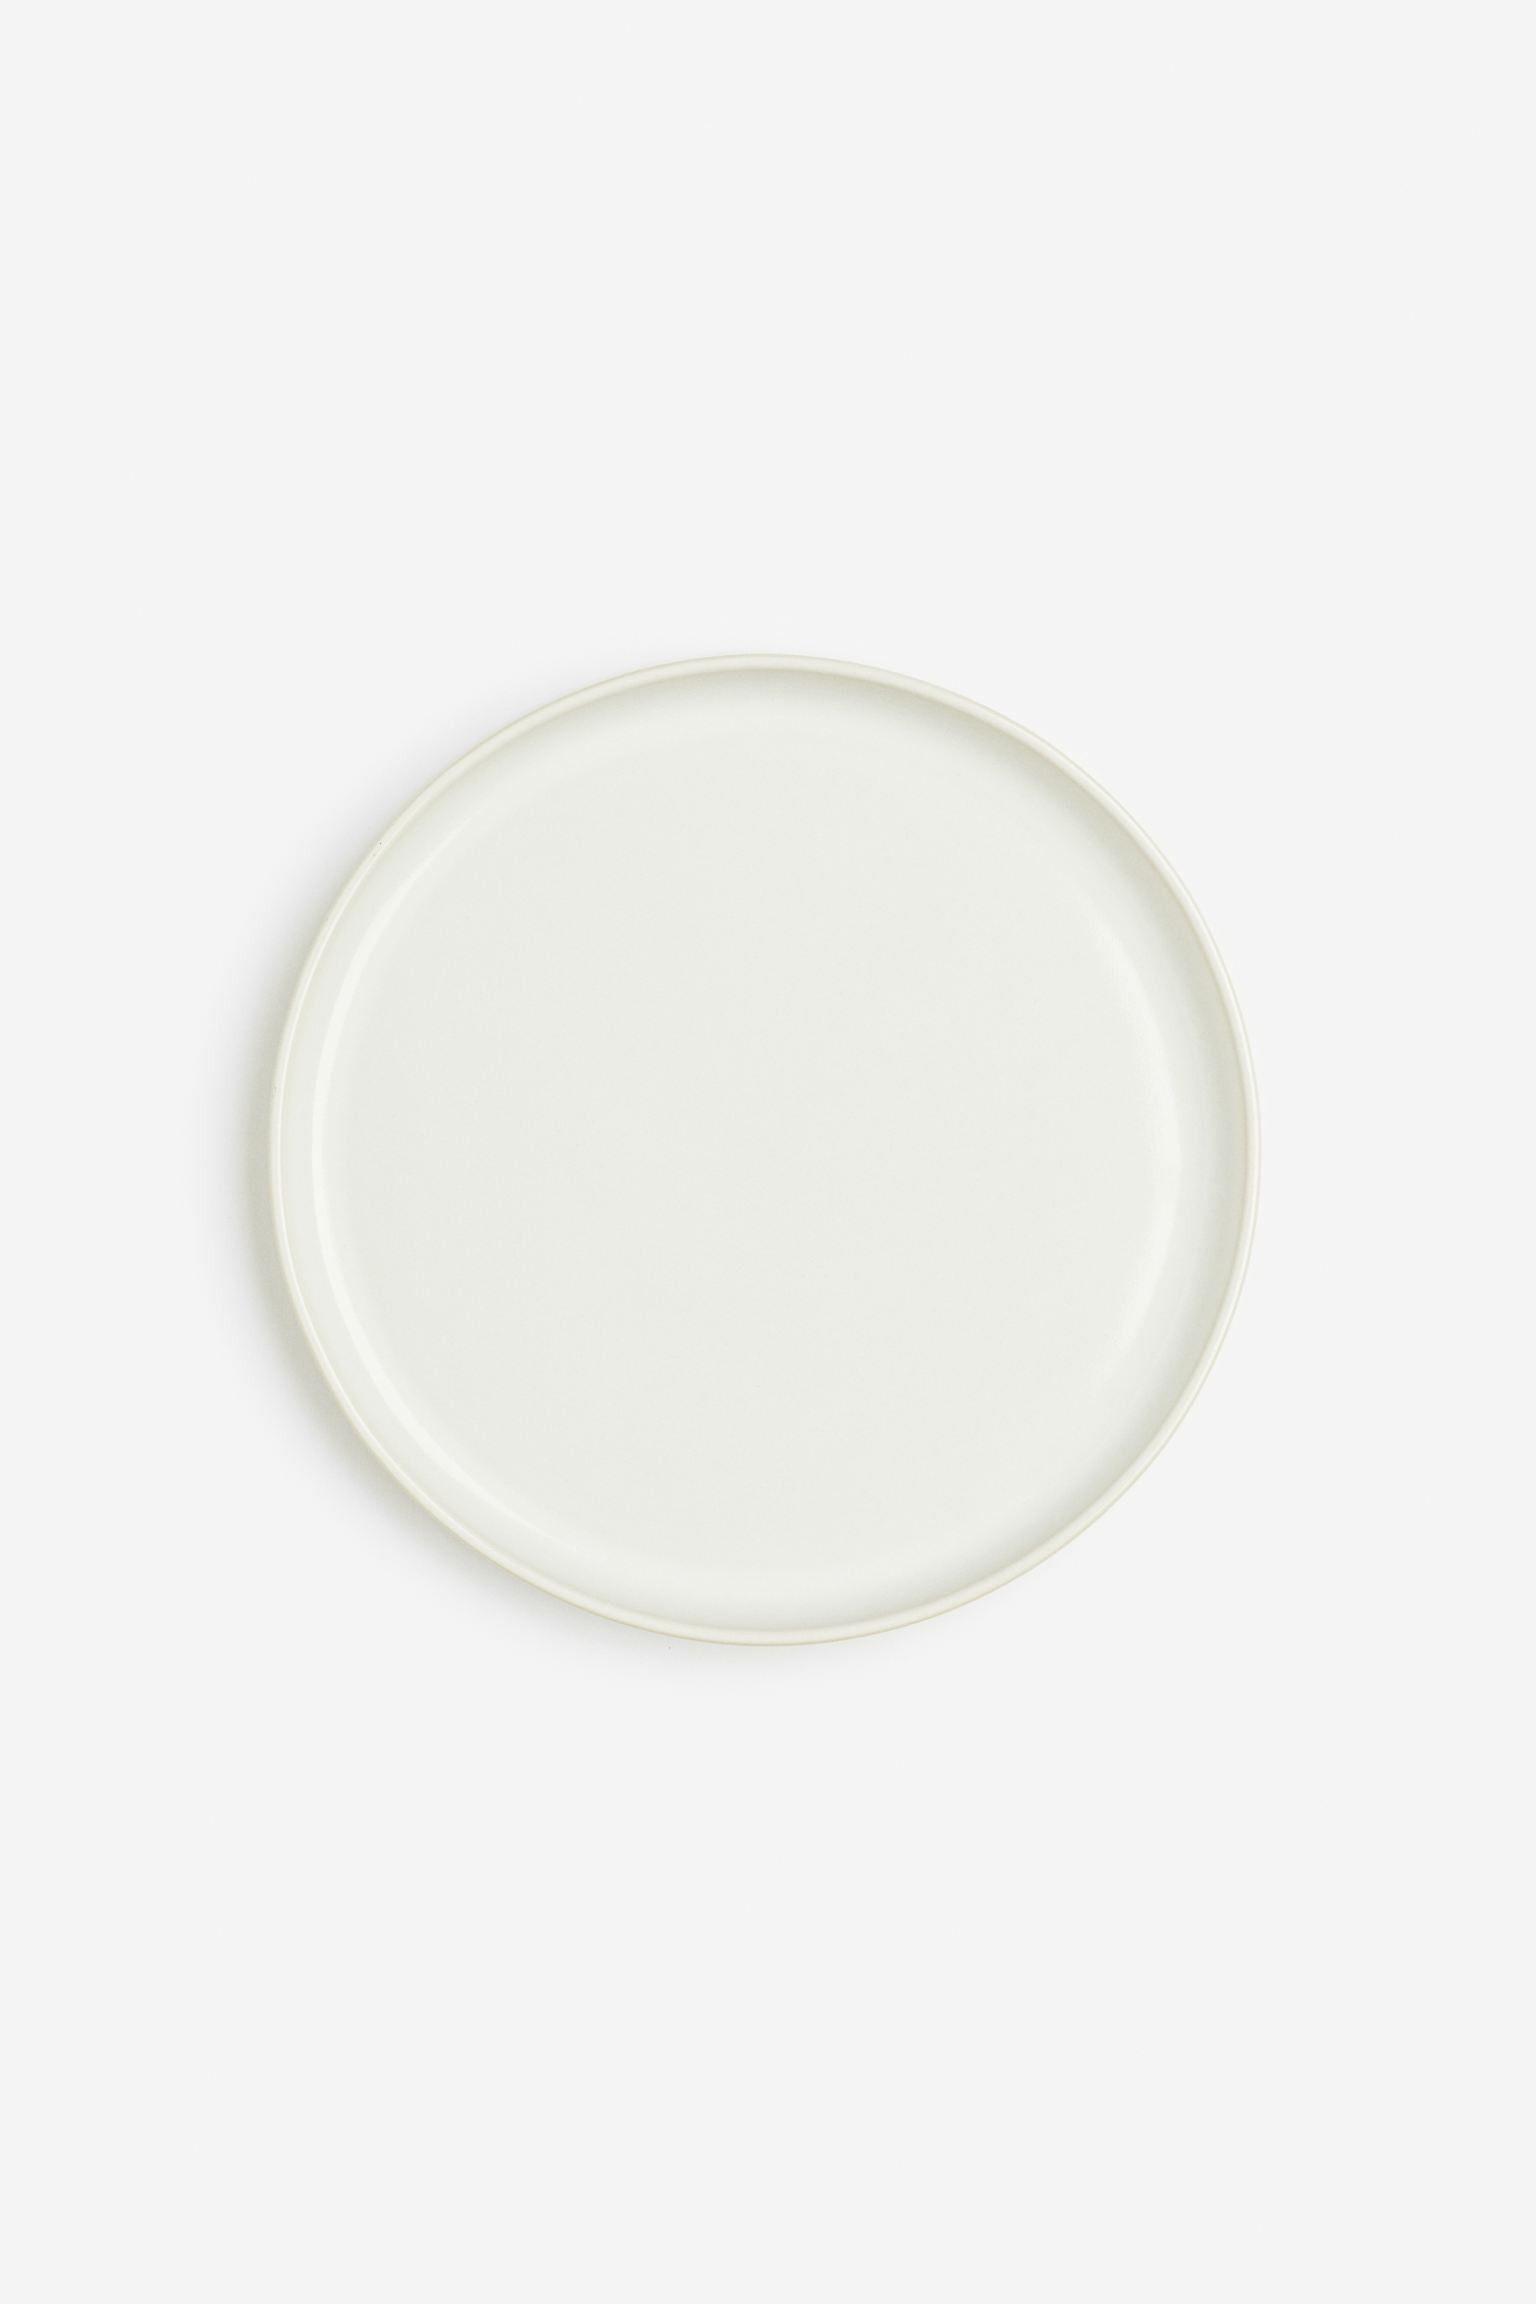 Керамическая тарелка, Натуральный белый/глянцевый